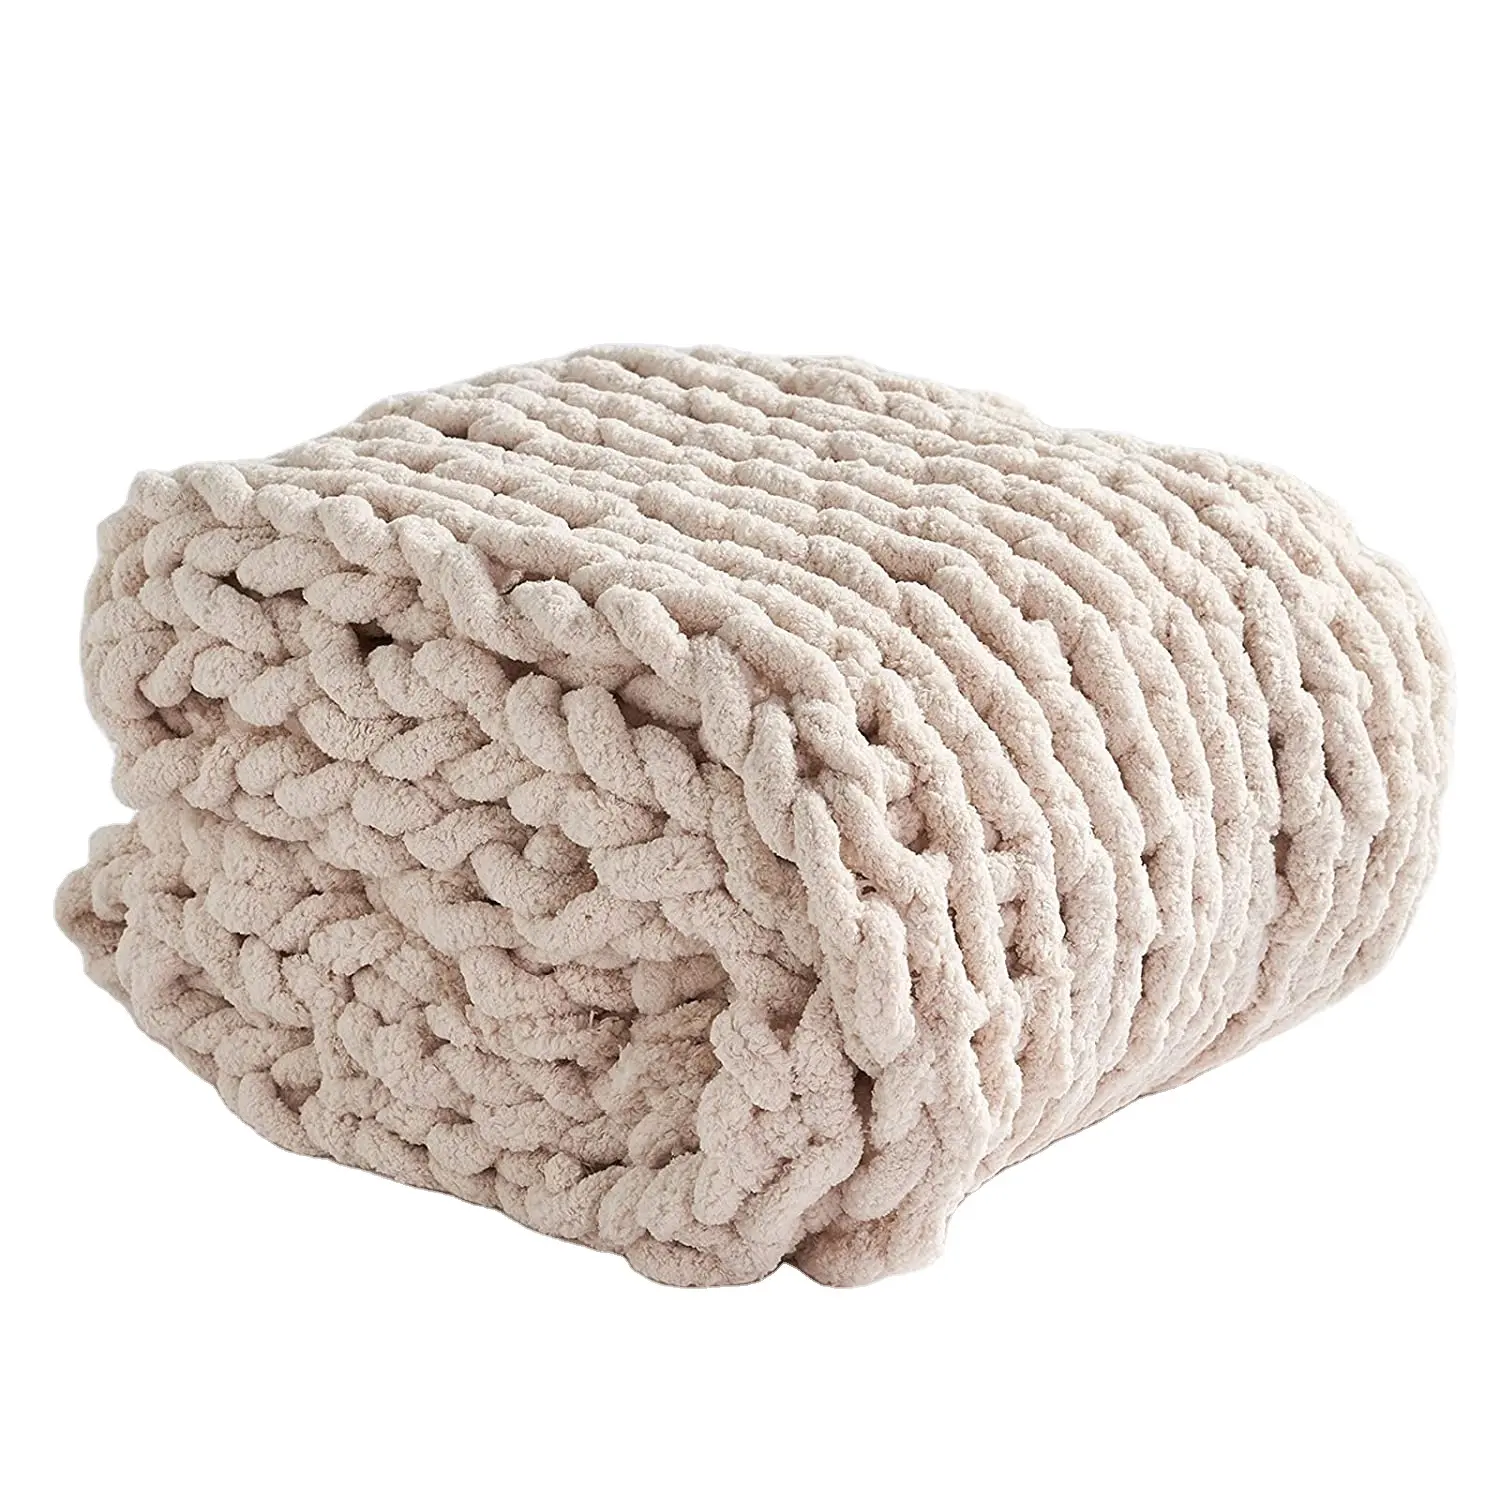 Chunky Knit Blanket Throw 50 "x 60" Soft Chenille Garn Strick decke Große gewichtete Häkel decken Handmade Cable Knit